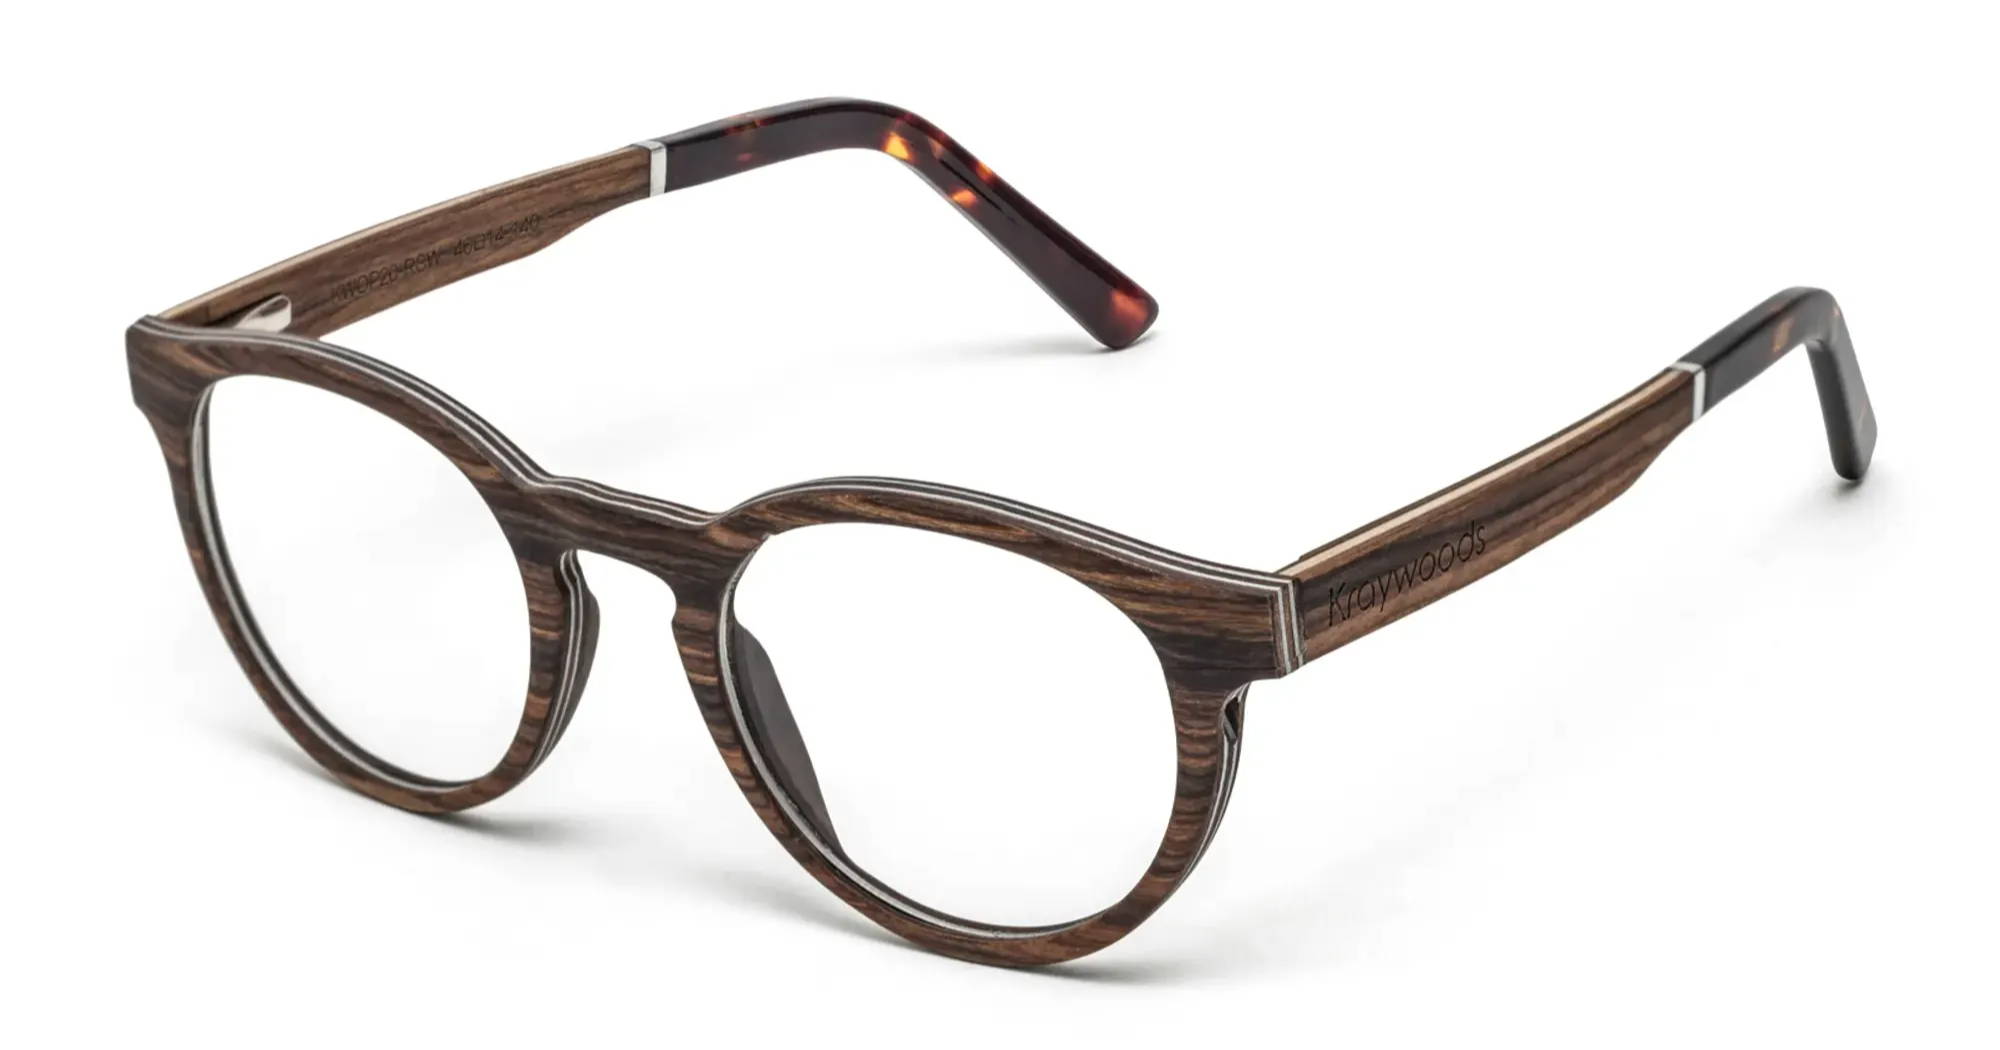 Monture de lunettes ronde en bois